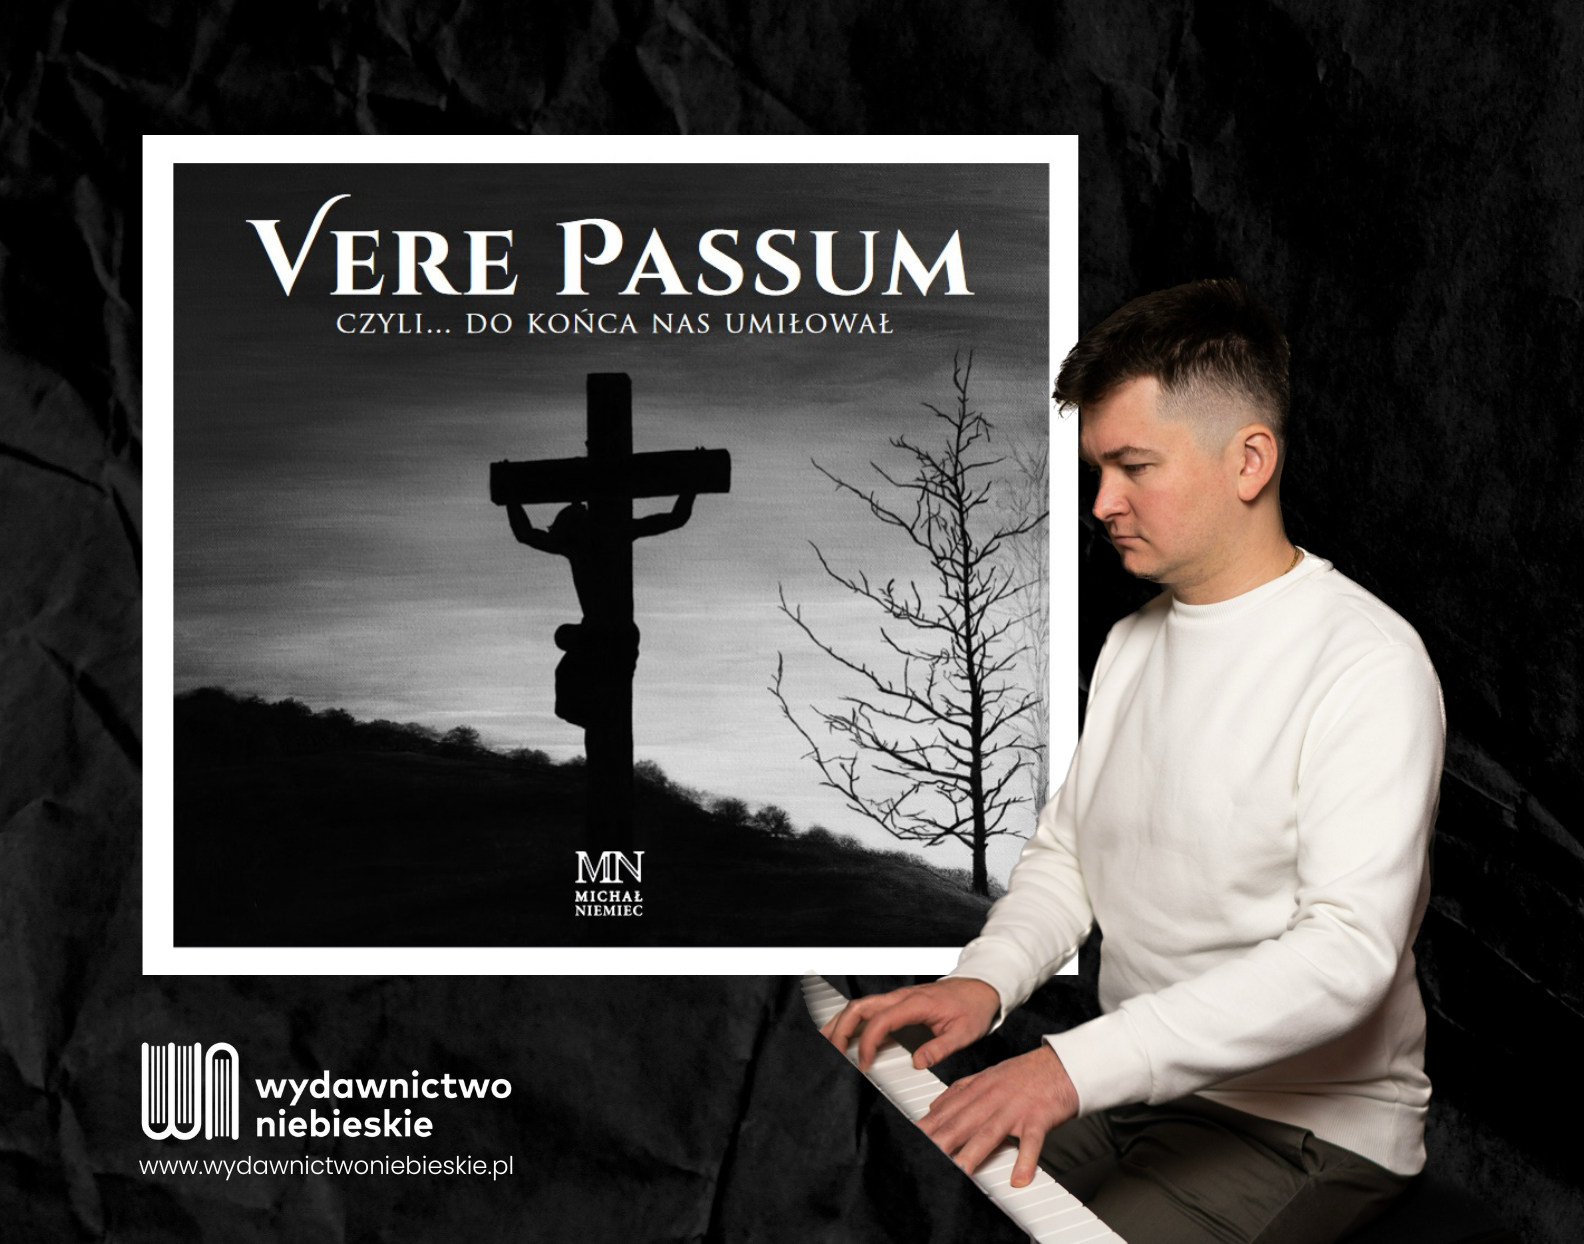 Featured image for “„Vere passum, czyli… do końca nas umiłował” – płyta z utworami pasyjnymi krakowskiego katechety i organisty”